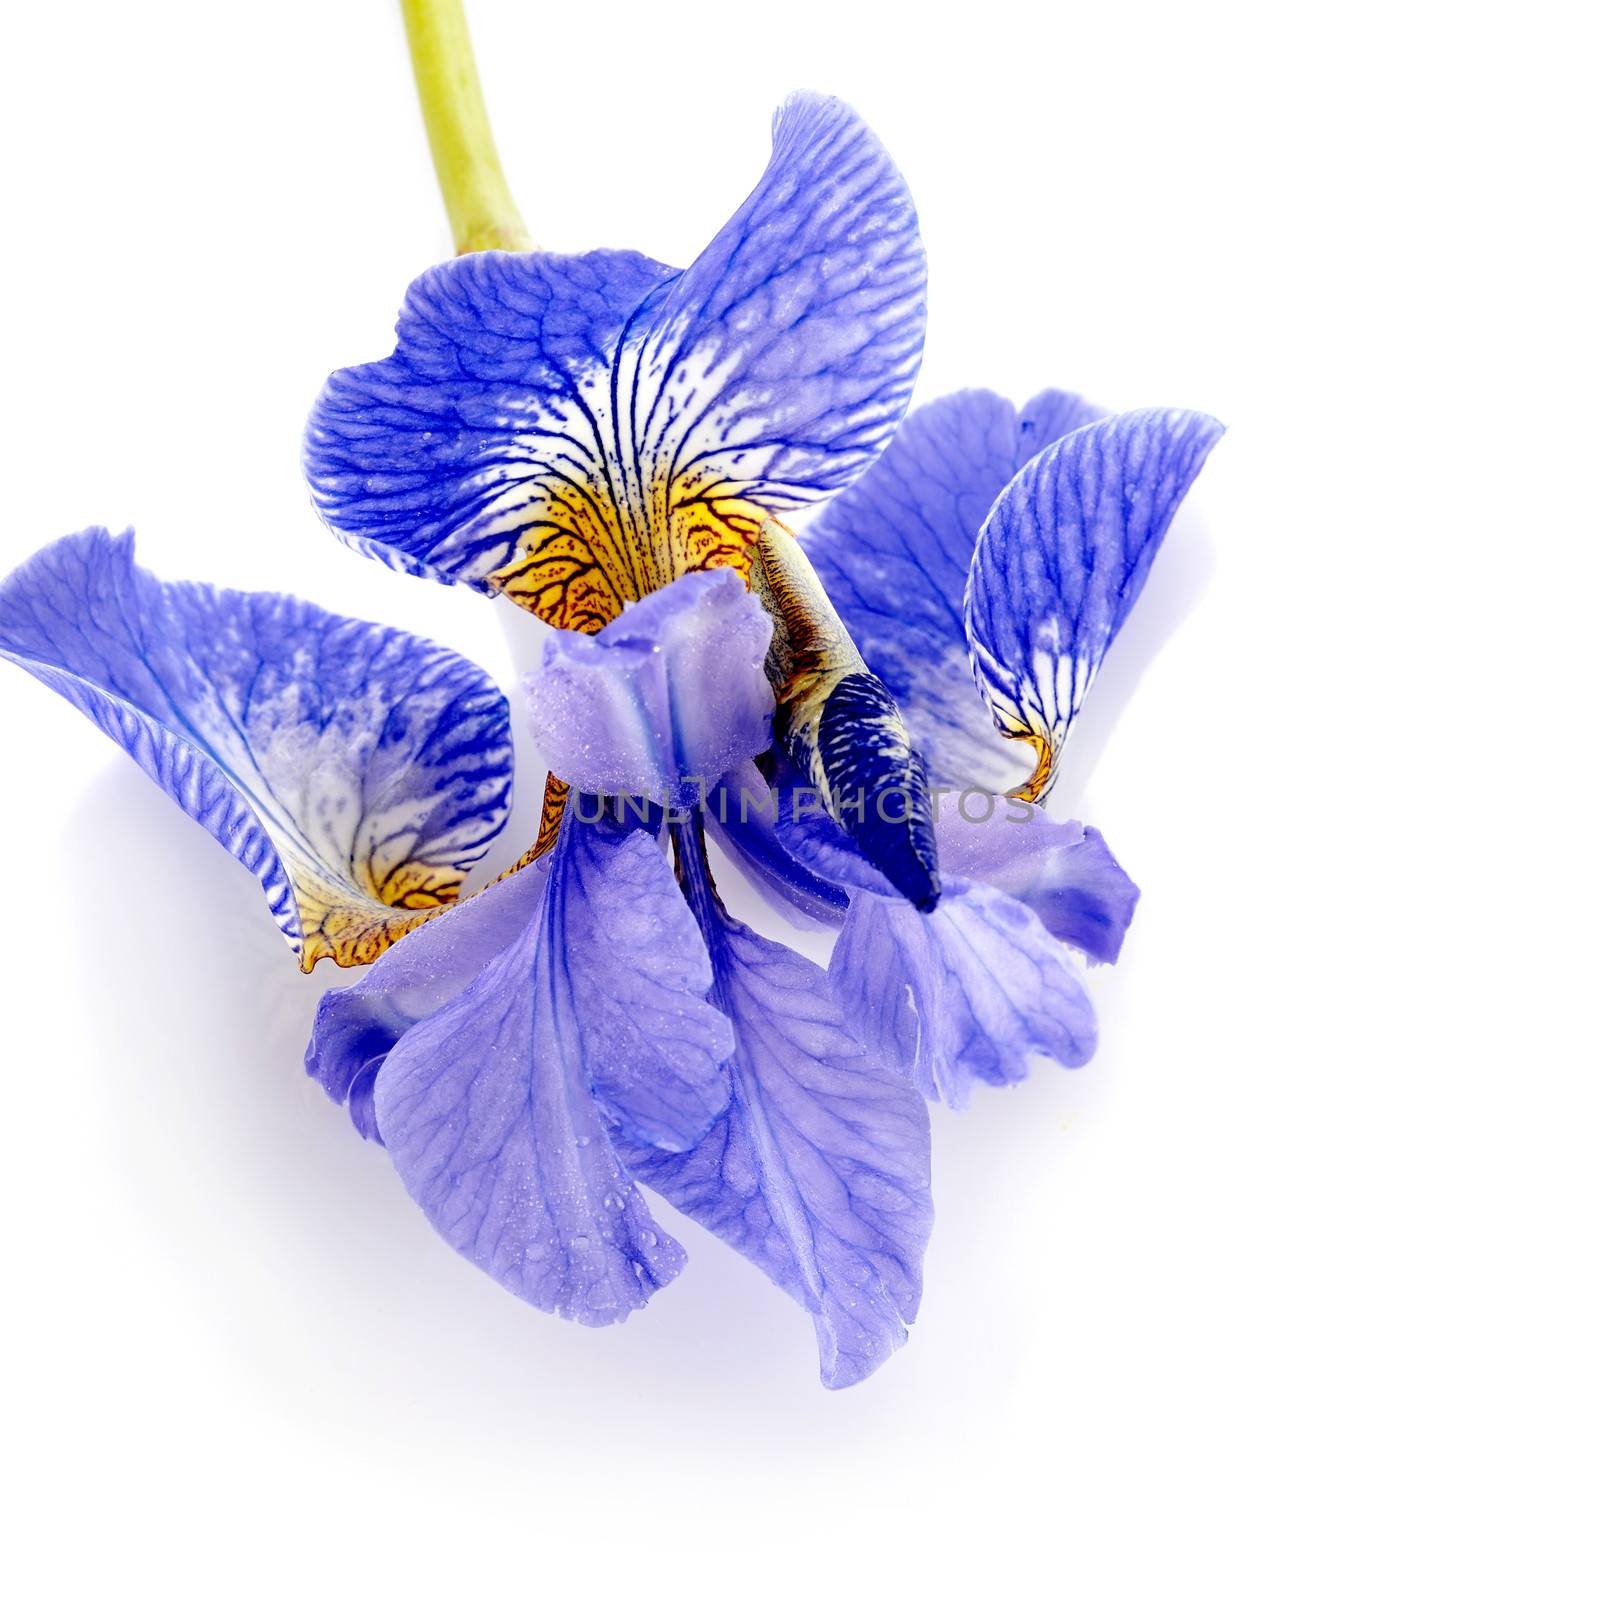 Flower of a blue iris. by Azaliya